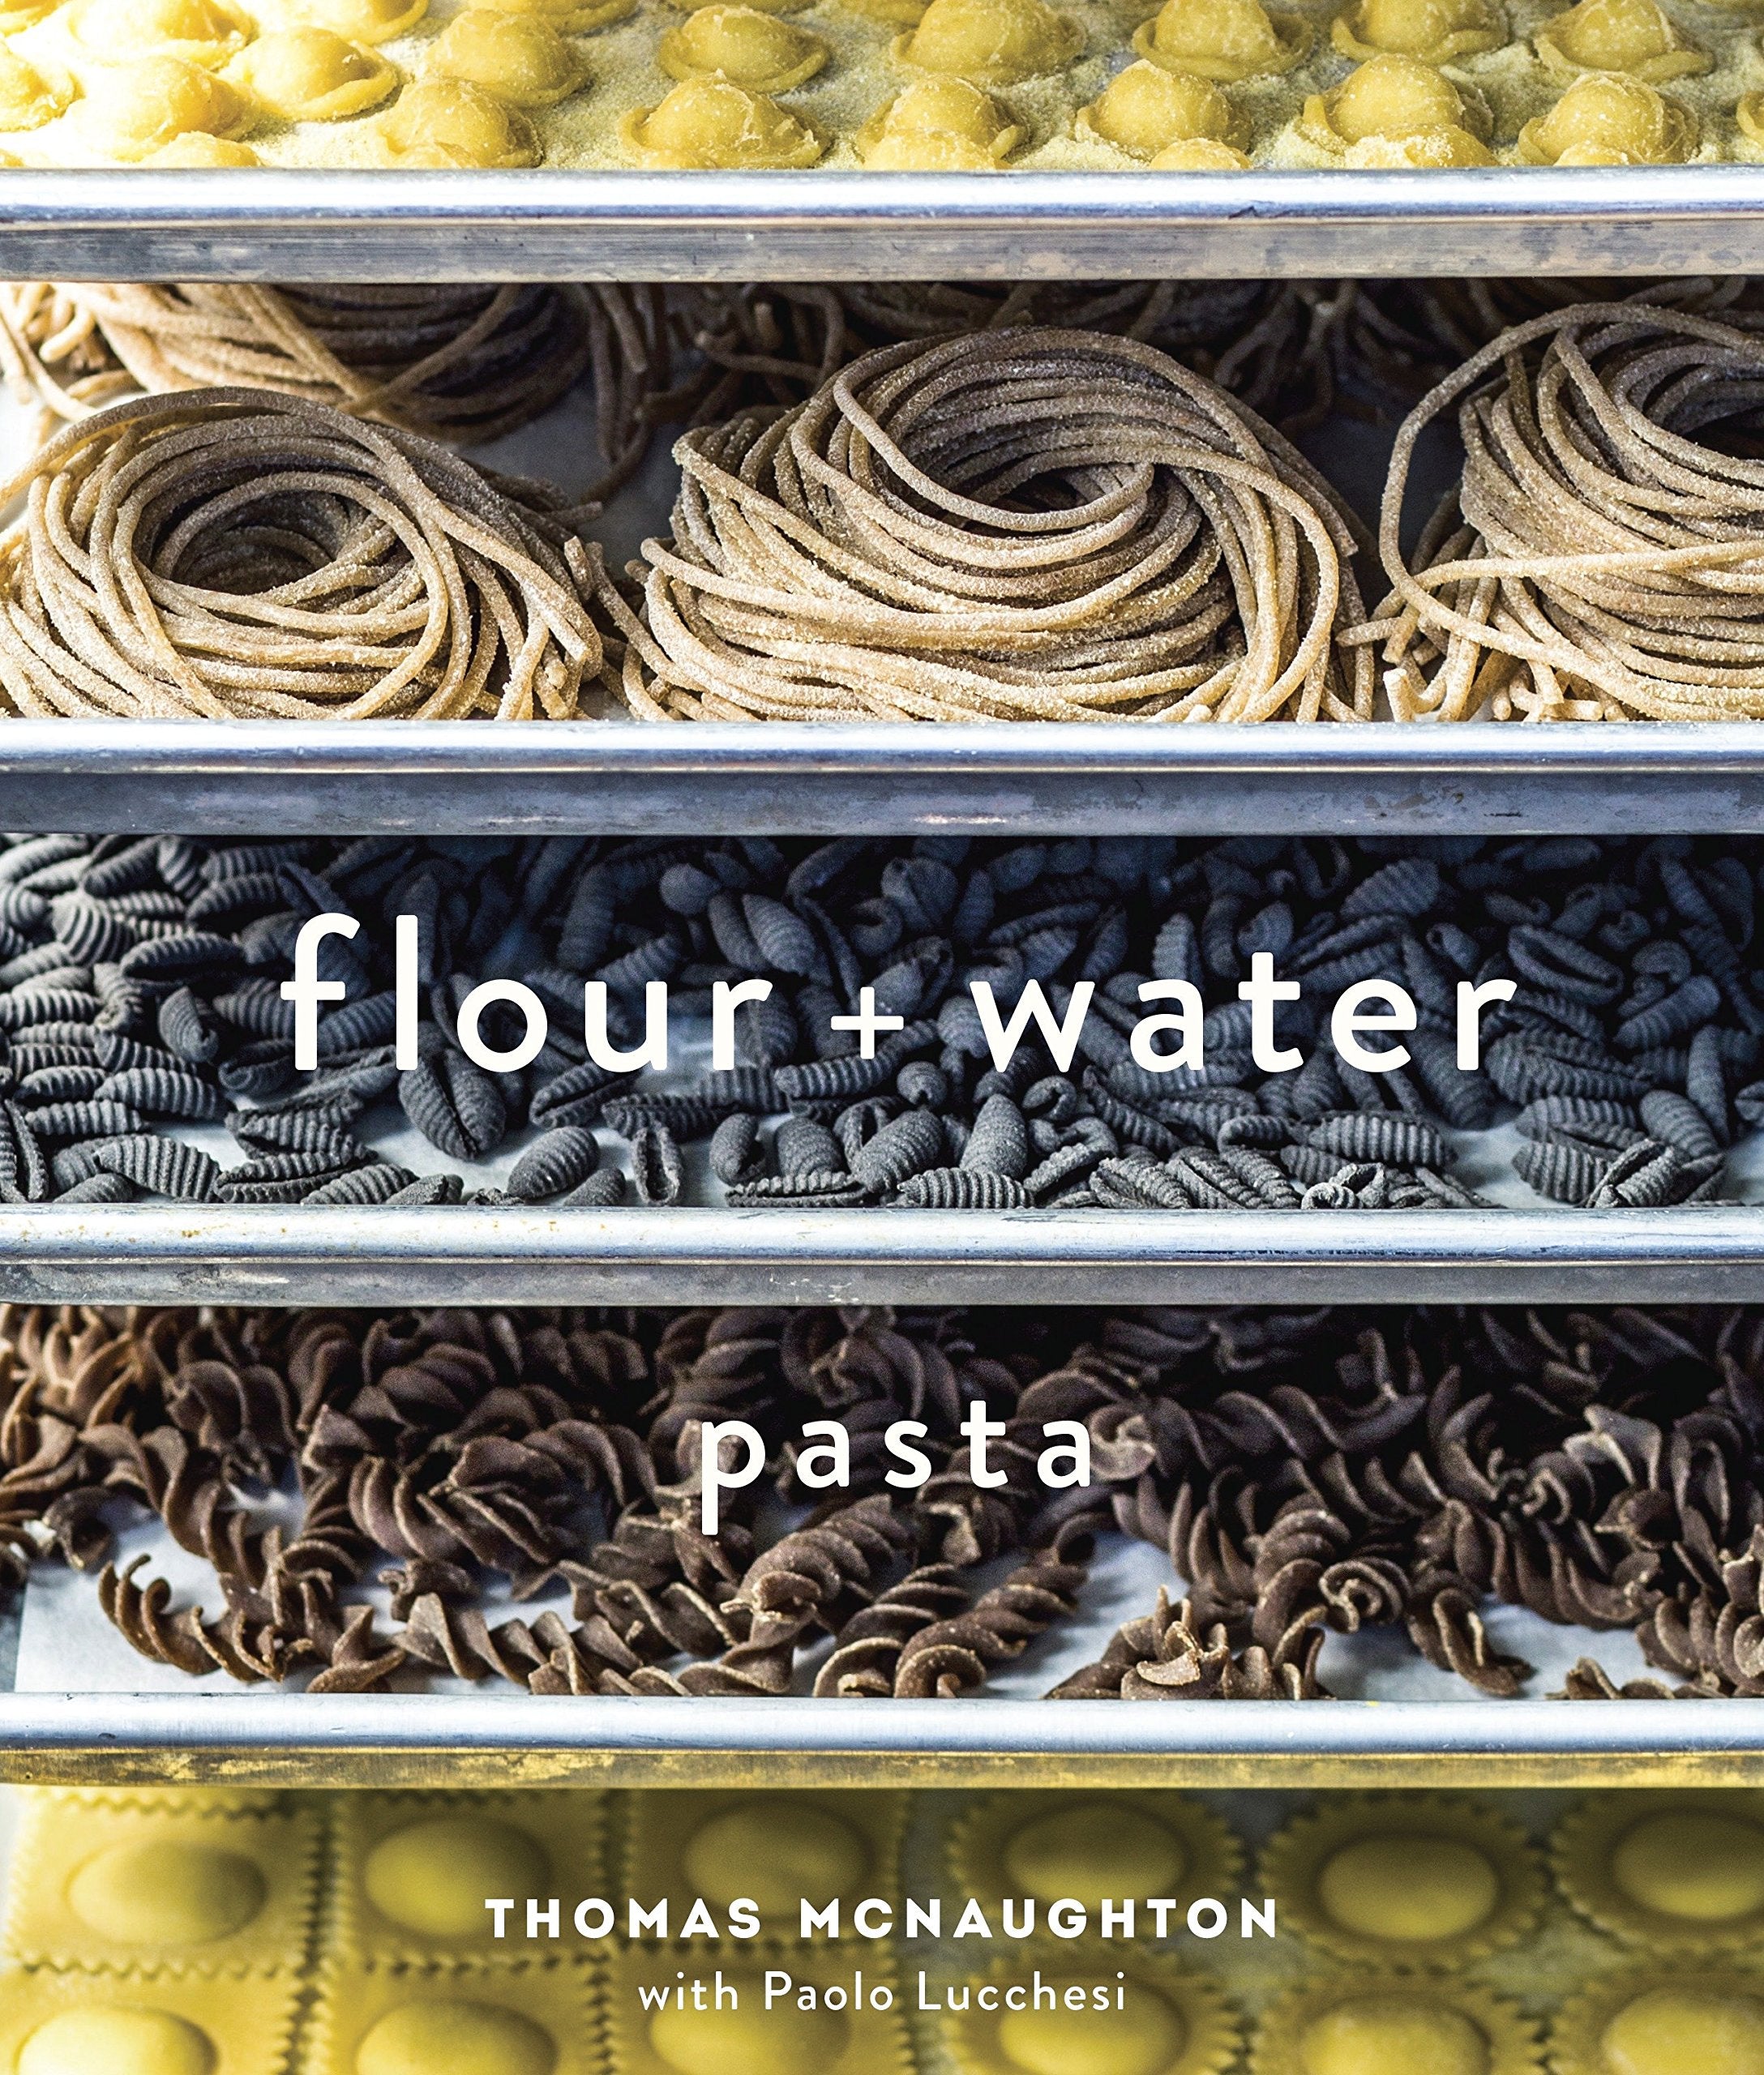 Flour + Water: Pasta (Thomas McNaughton)